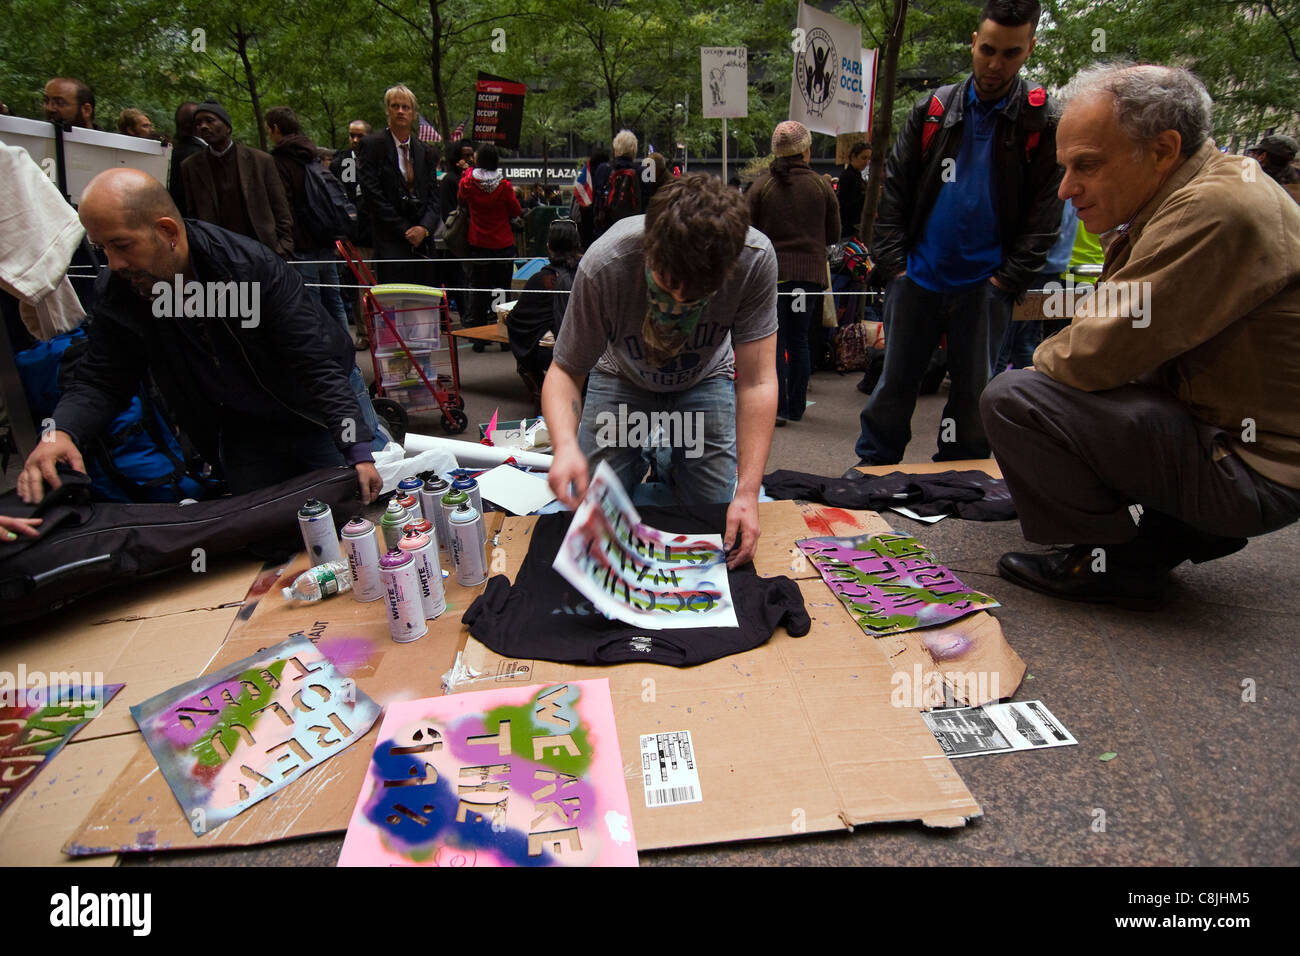 Occupare Wall Street protester verniciatura a spruzzo "occupare WALL STREET" su una T-shirt nera all'interno di Zuccotti Park Foto Stock